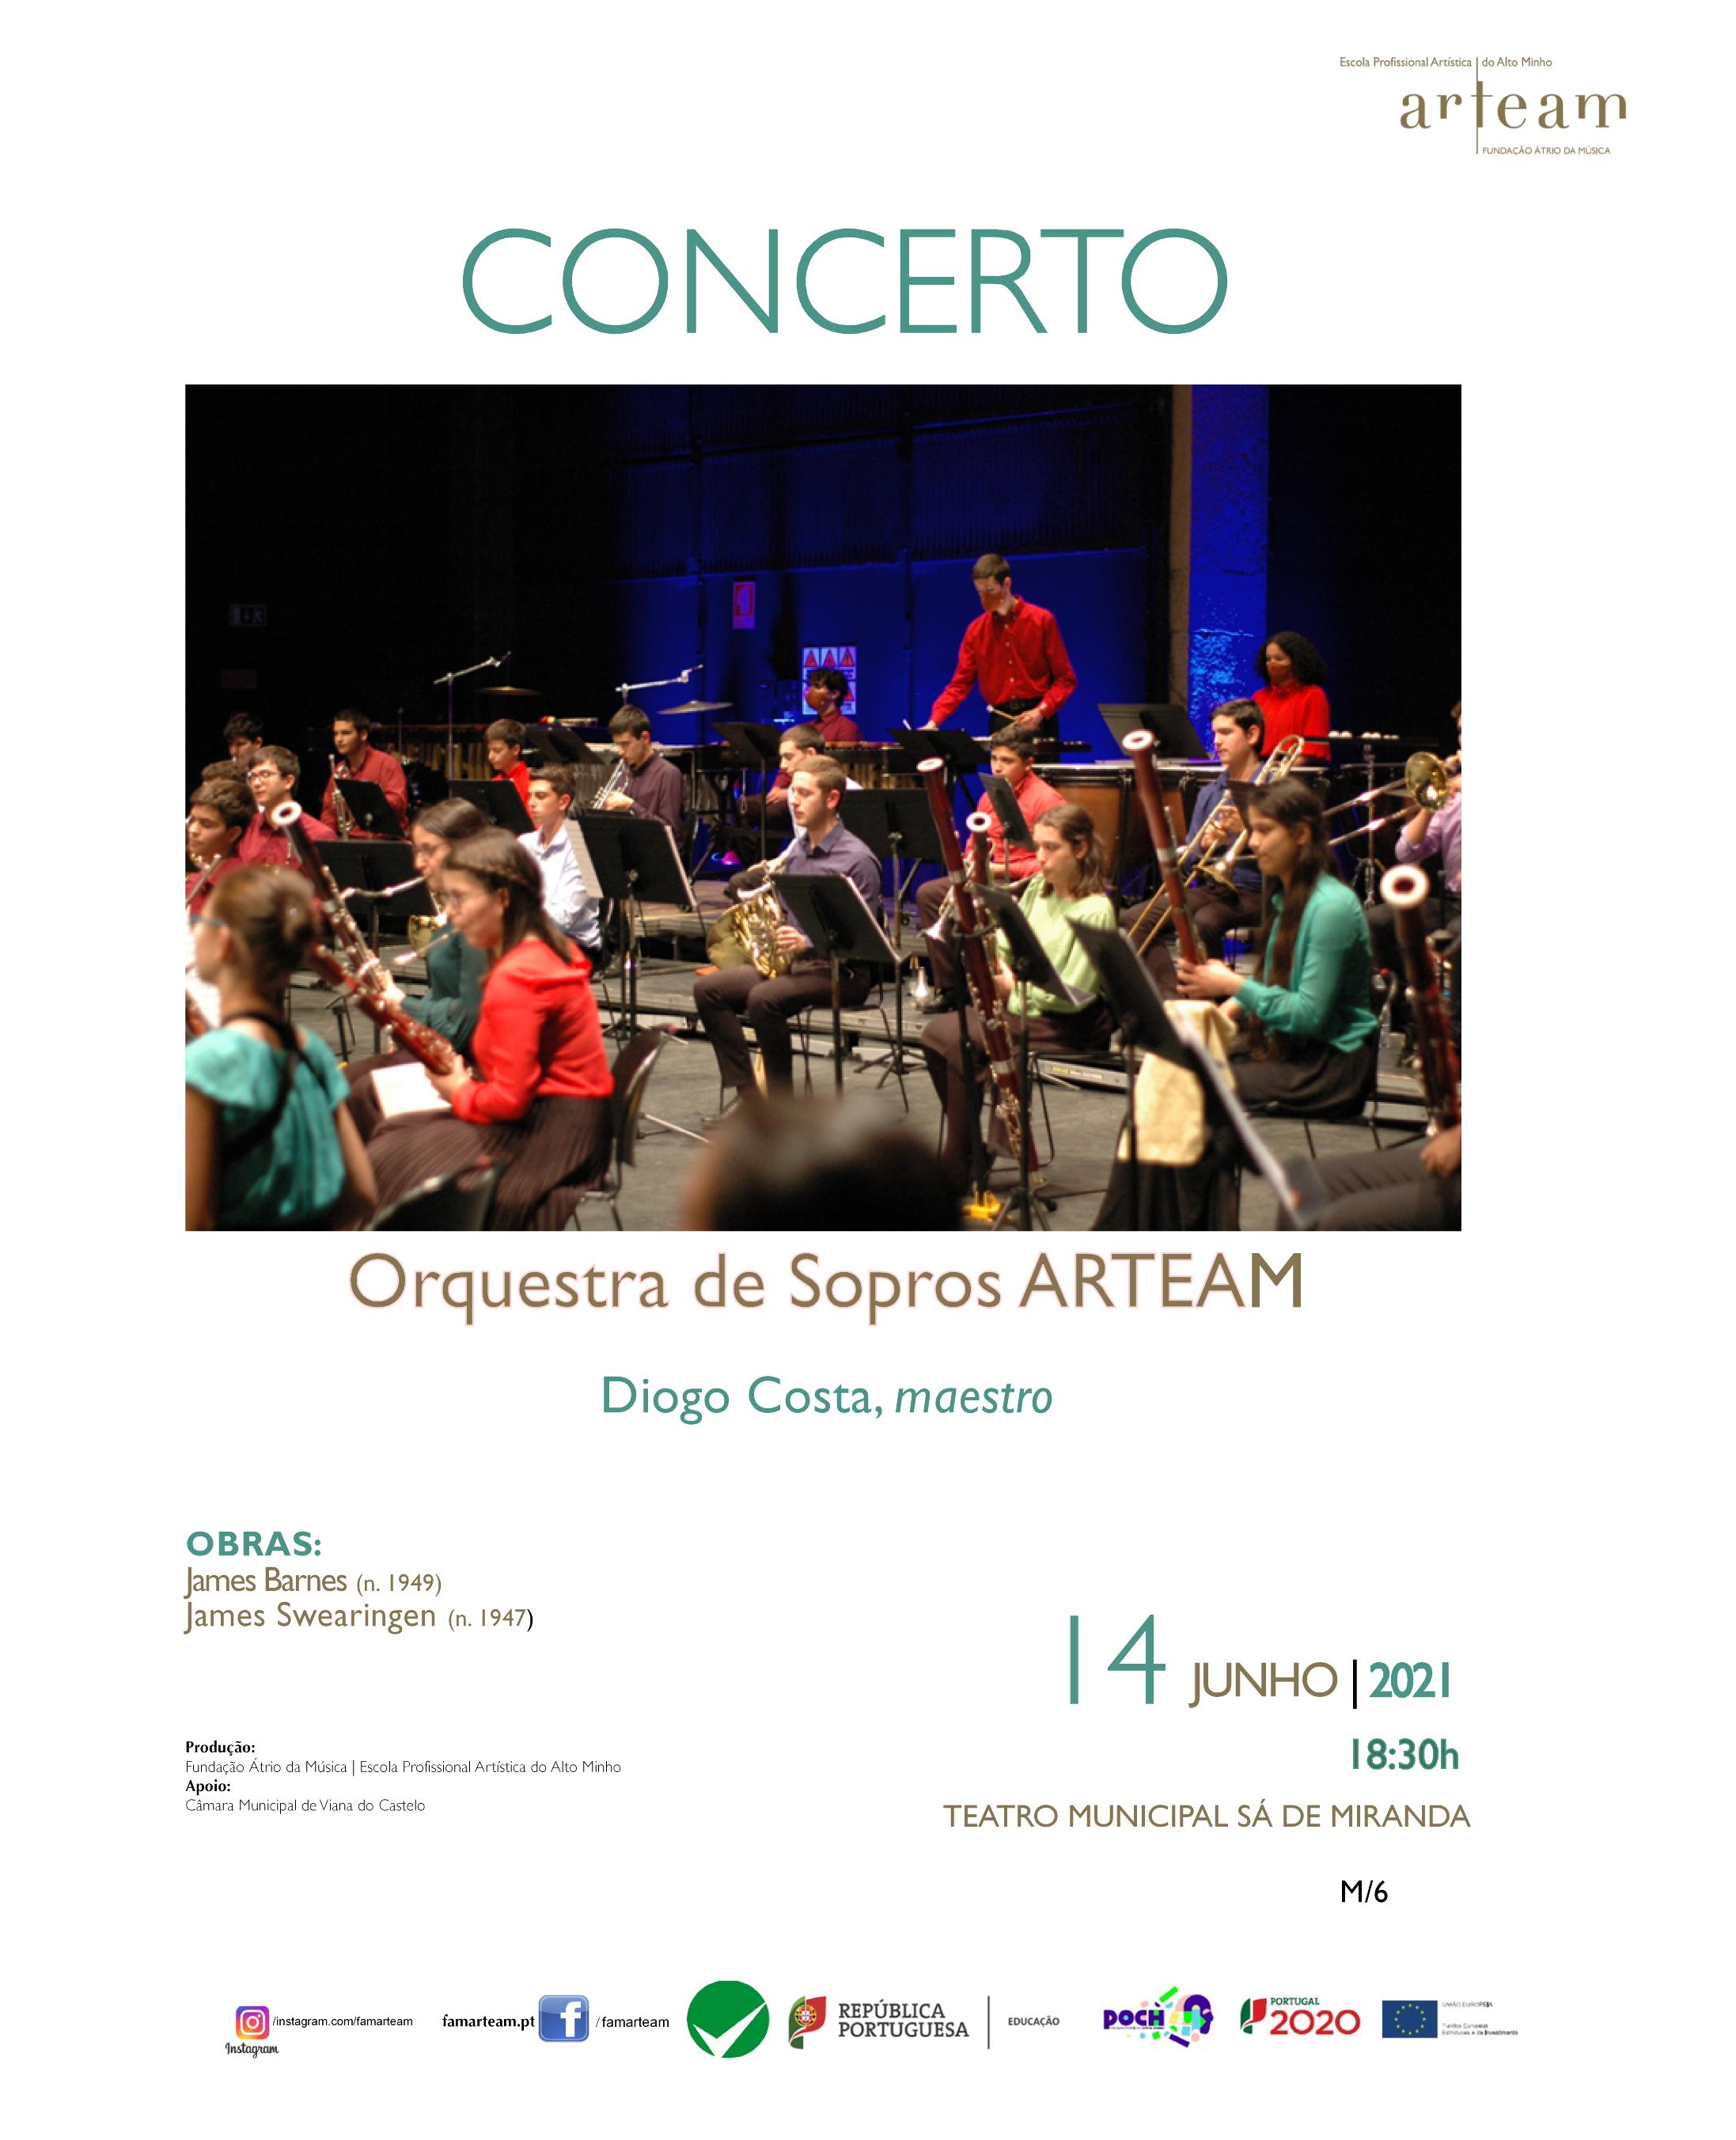 Concerto Orquestra de Sopros ARTEAM